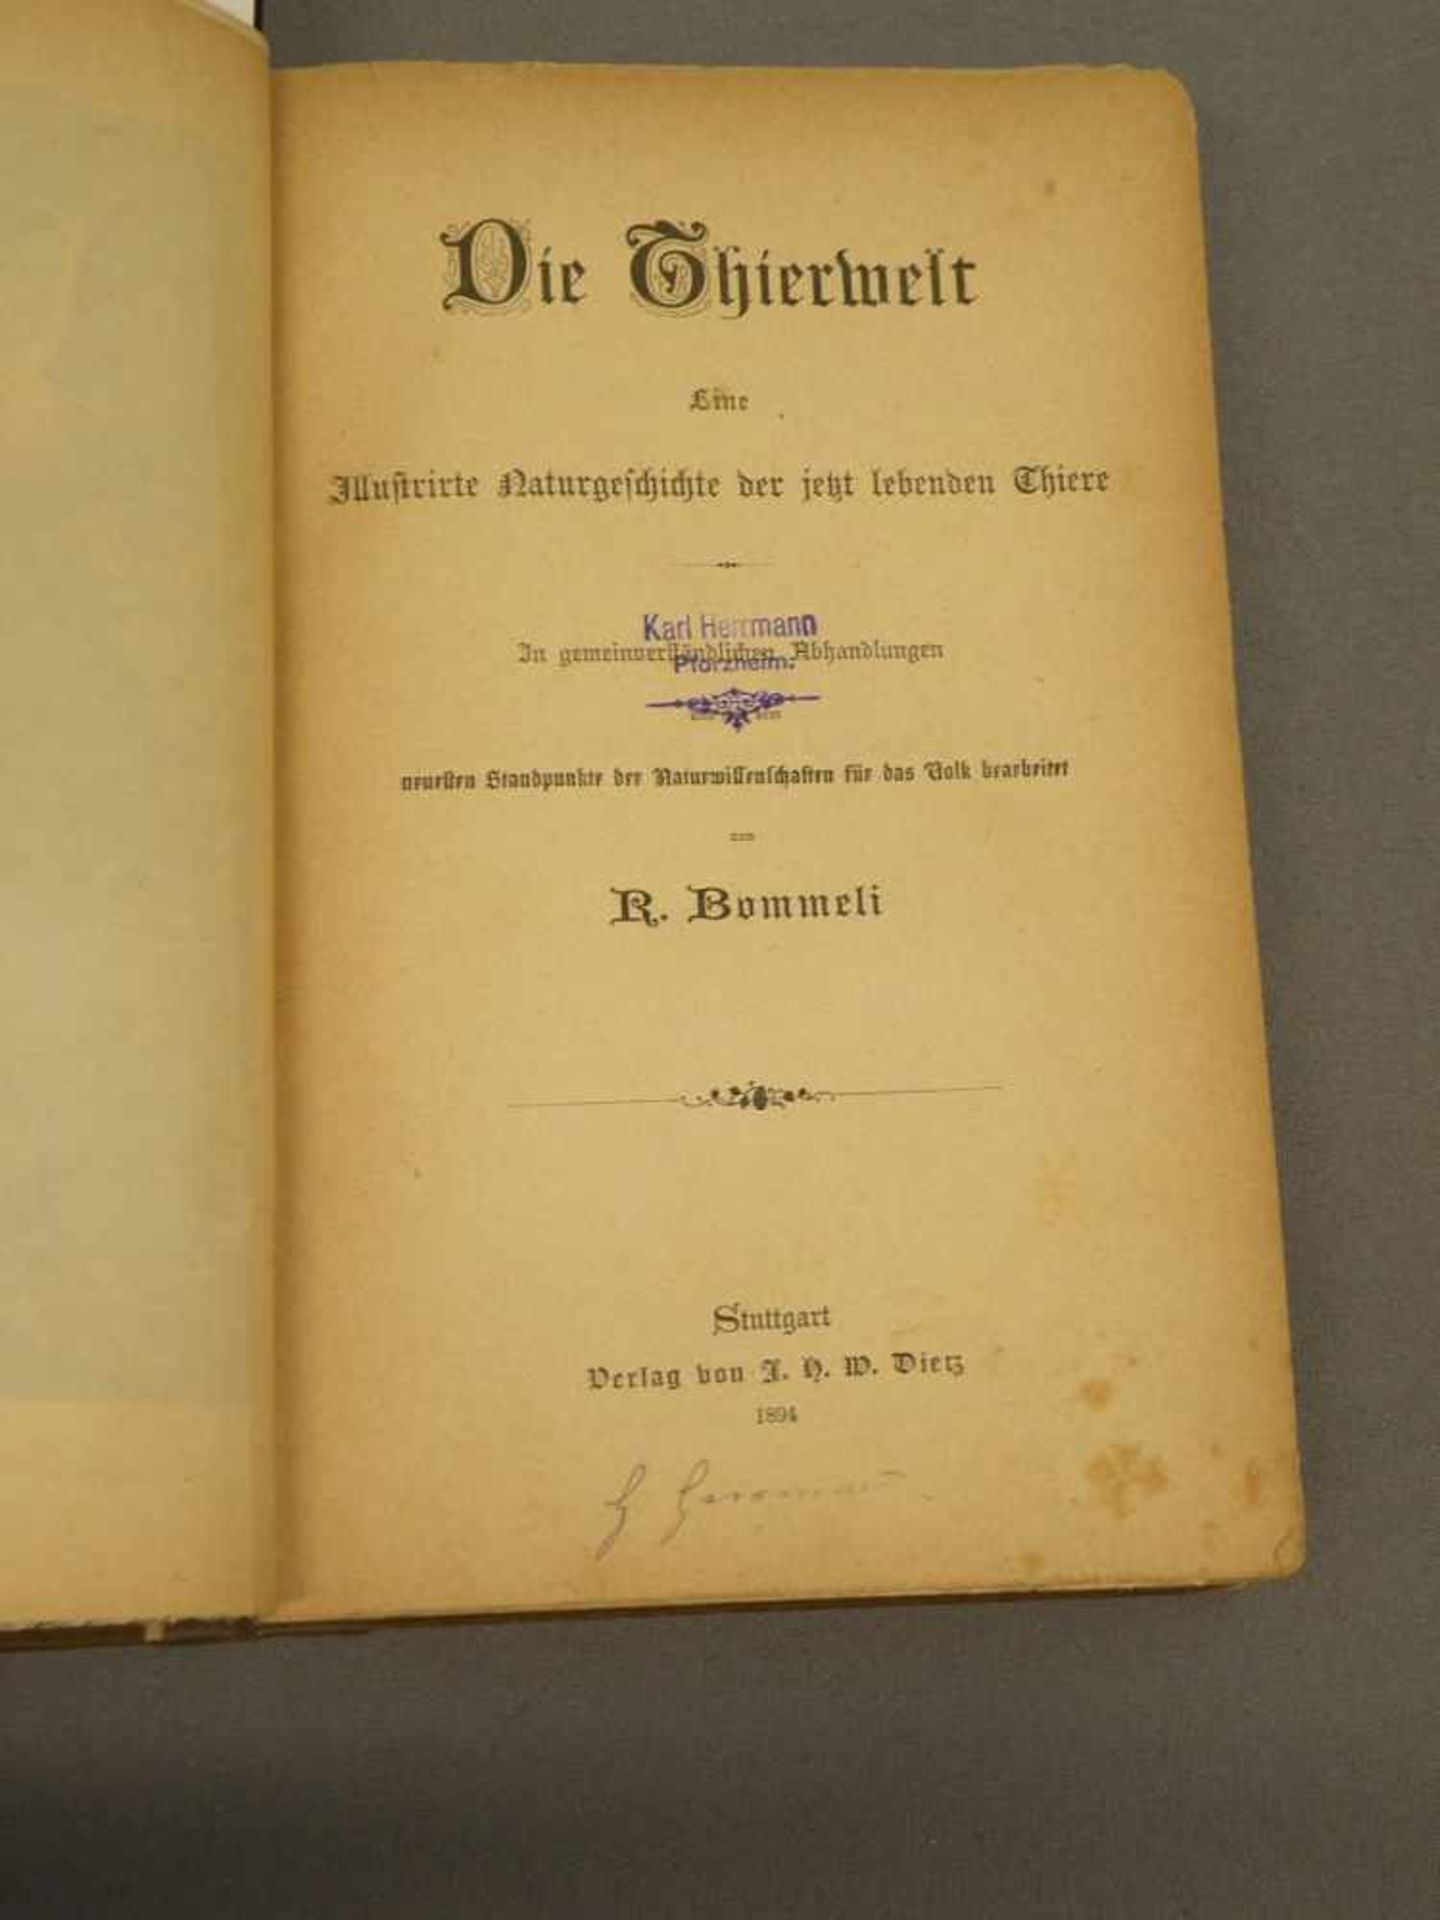 Buch "Illustrierte Tierwelt", Verlag Dietz, Stuttgart, 1894, fleckig